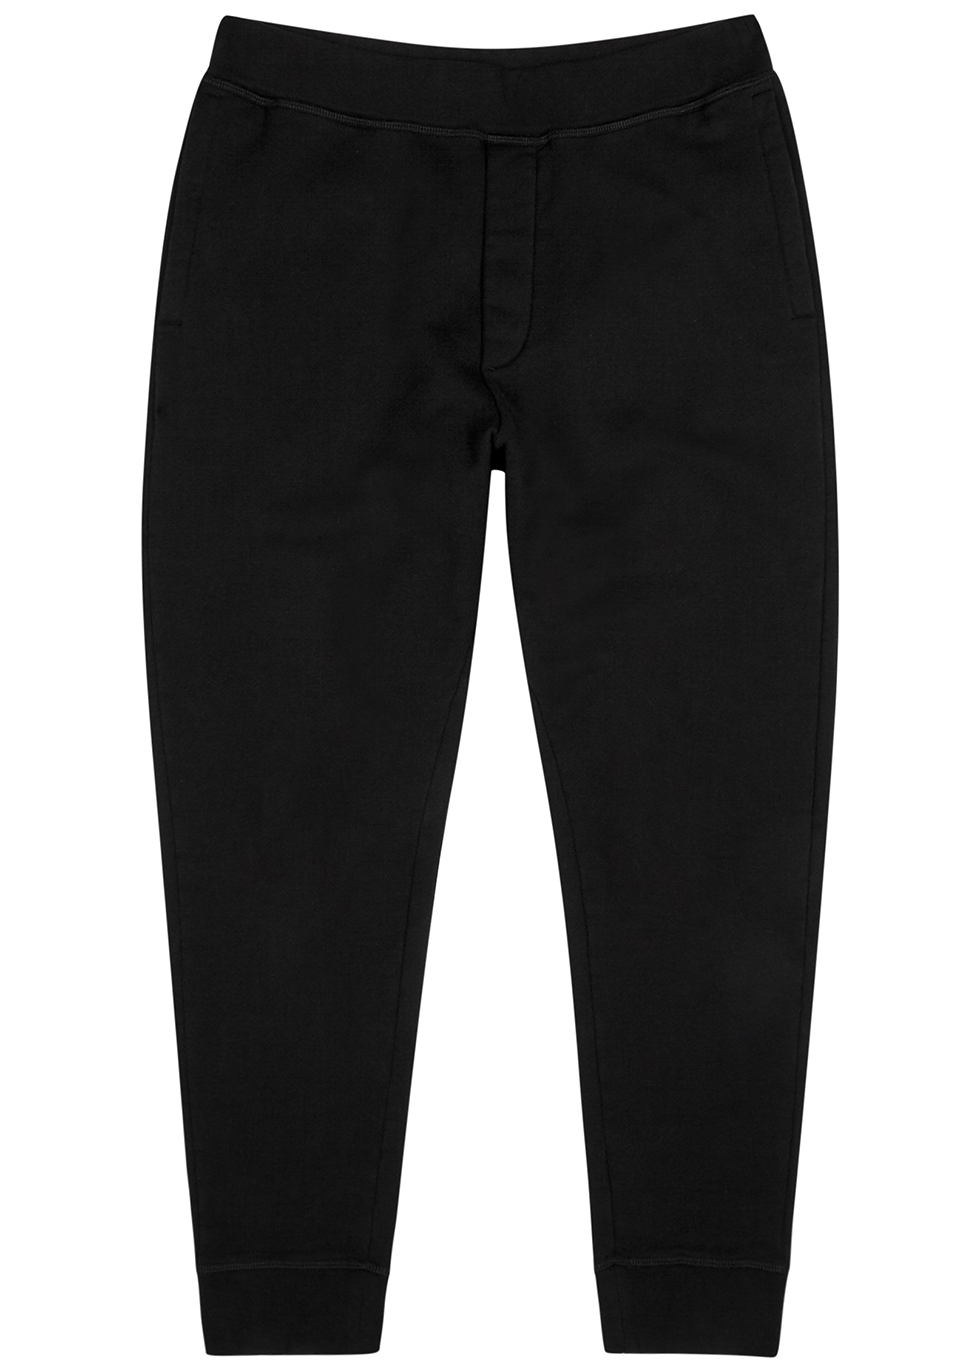 Black cotton sweatpants